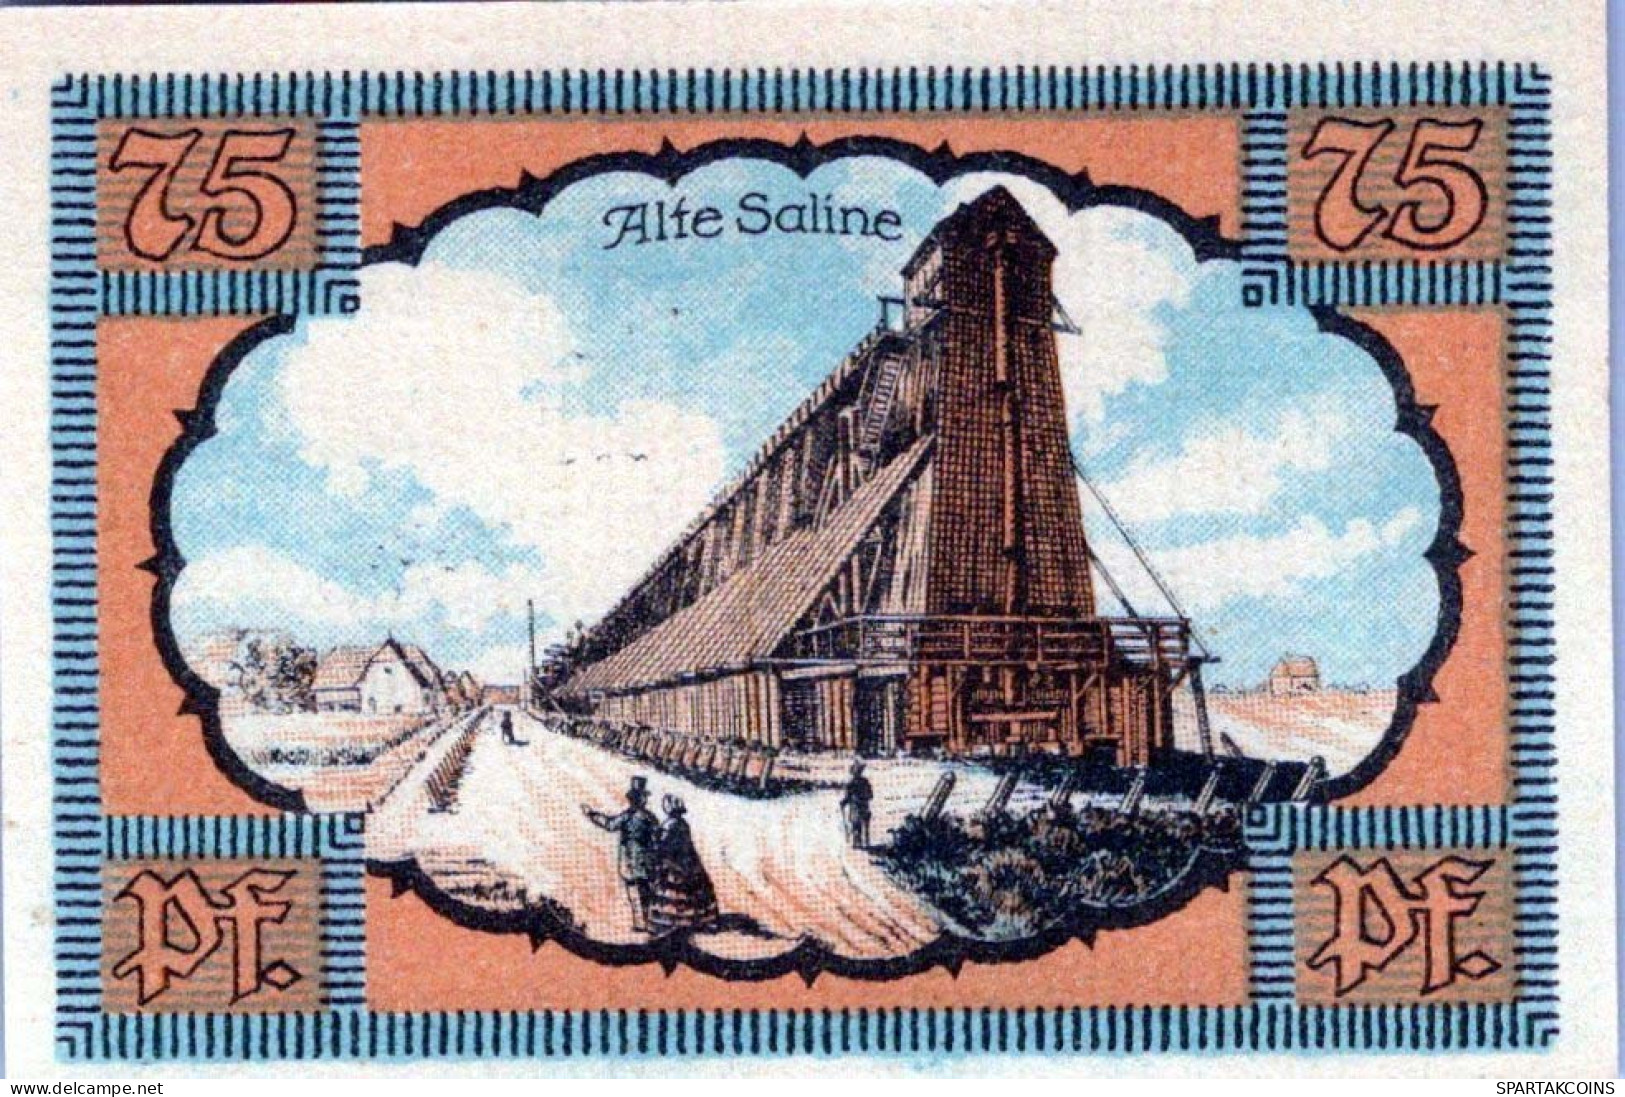 75 PFENNIG 1921 Stadt KOLBERG Pomerania DEUTSCHLAND Notgeld Banknote #PF503 - [11] Local Banknote Issues